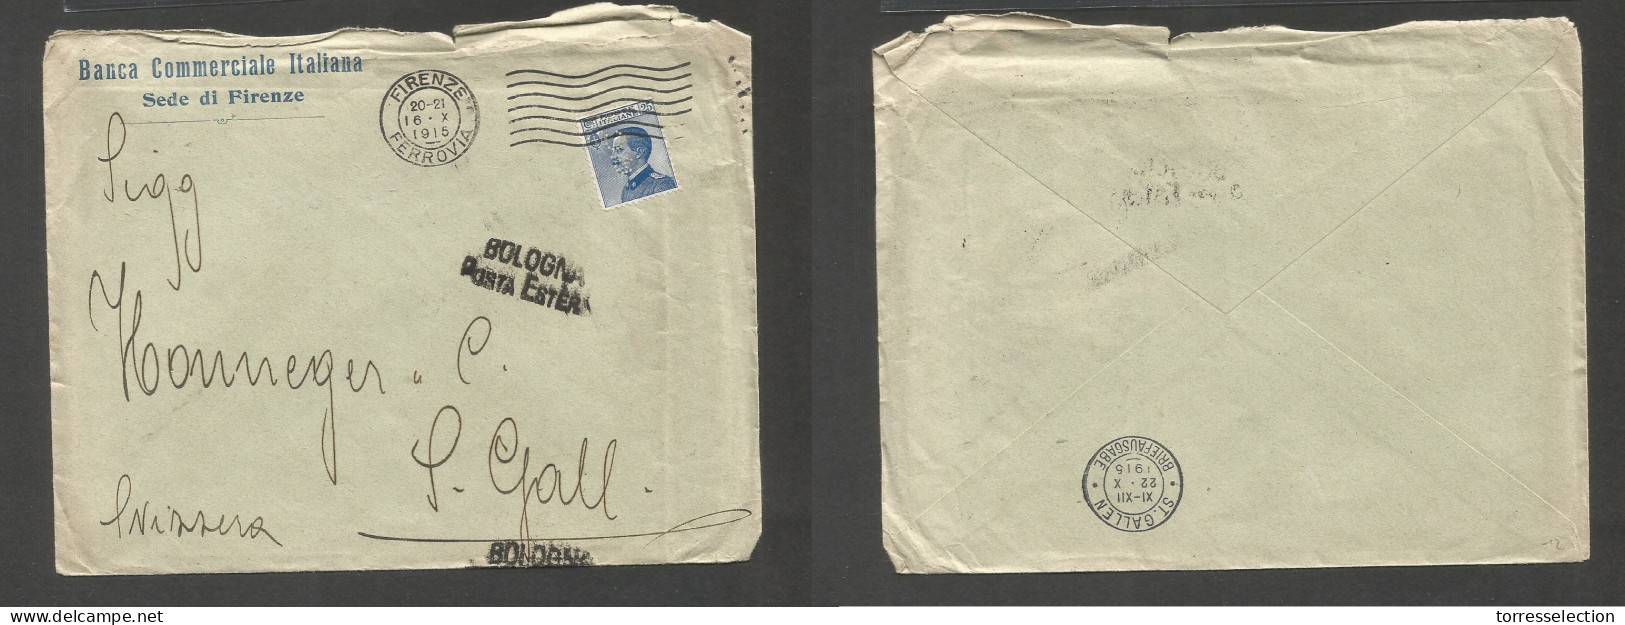 Italy - XX. 1915 (16 Oct) Perfin. BCI. Firenze - Switzerland, St. Gallen (22 Oct) Single Fkd Envelope. SALE. - Zonder Classificatie